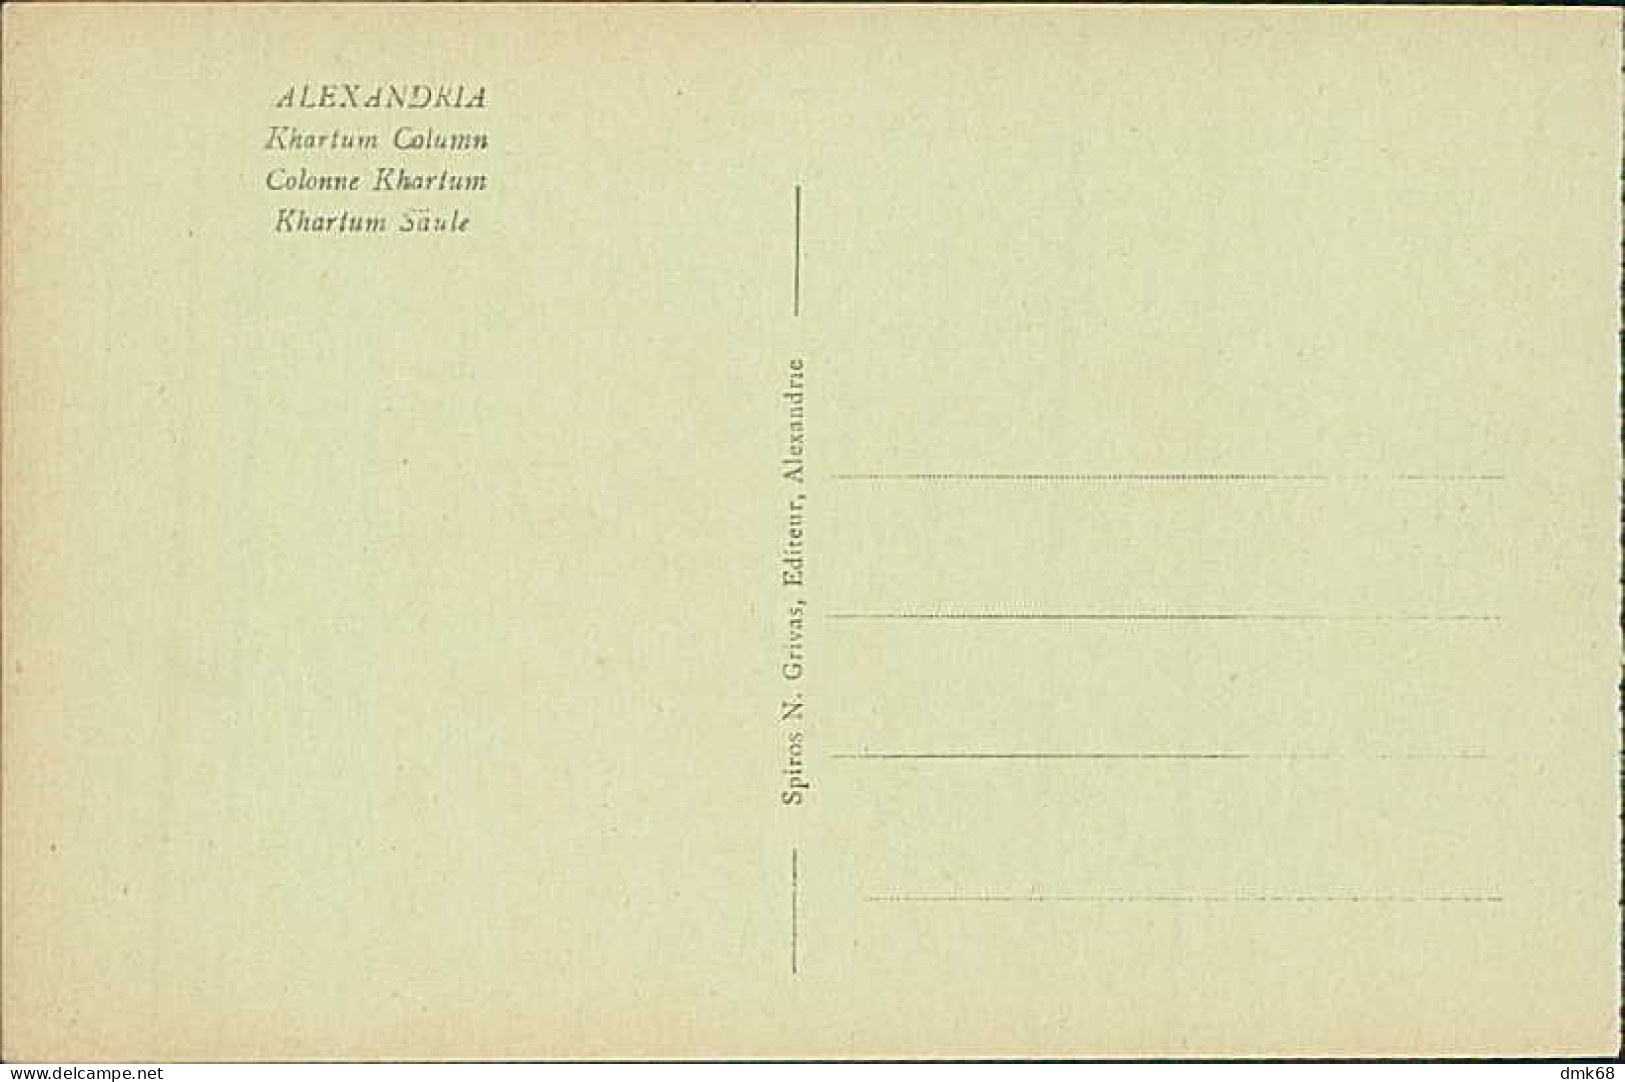 EGYPT - ALEXANDRIA / ALEXANDRIE - KHARTUM COLUMN - EDIT. N. GRIVAS - 1910s (12619) - Alexandria